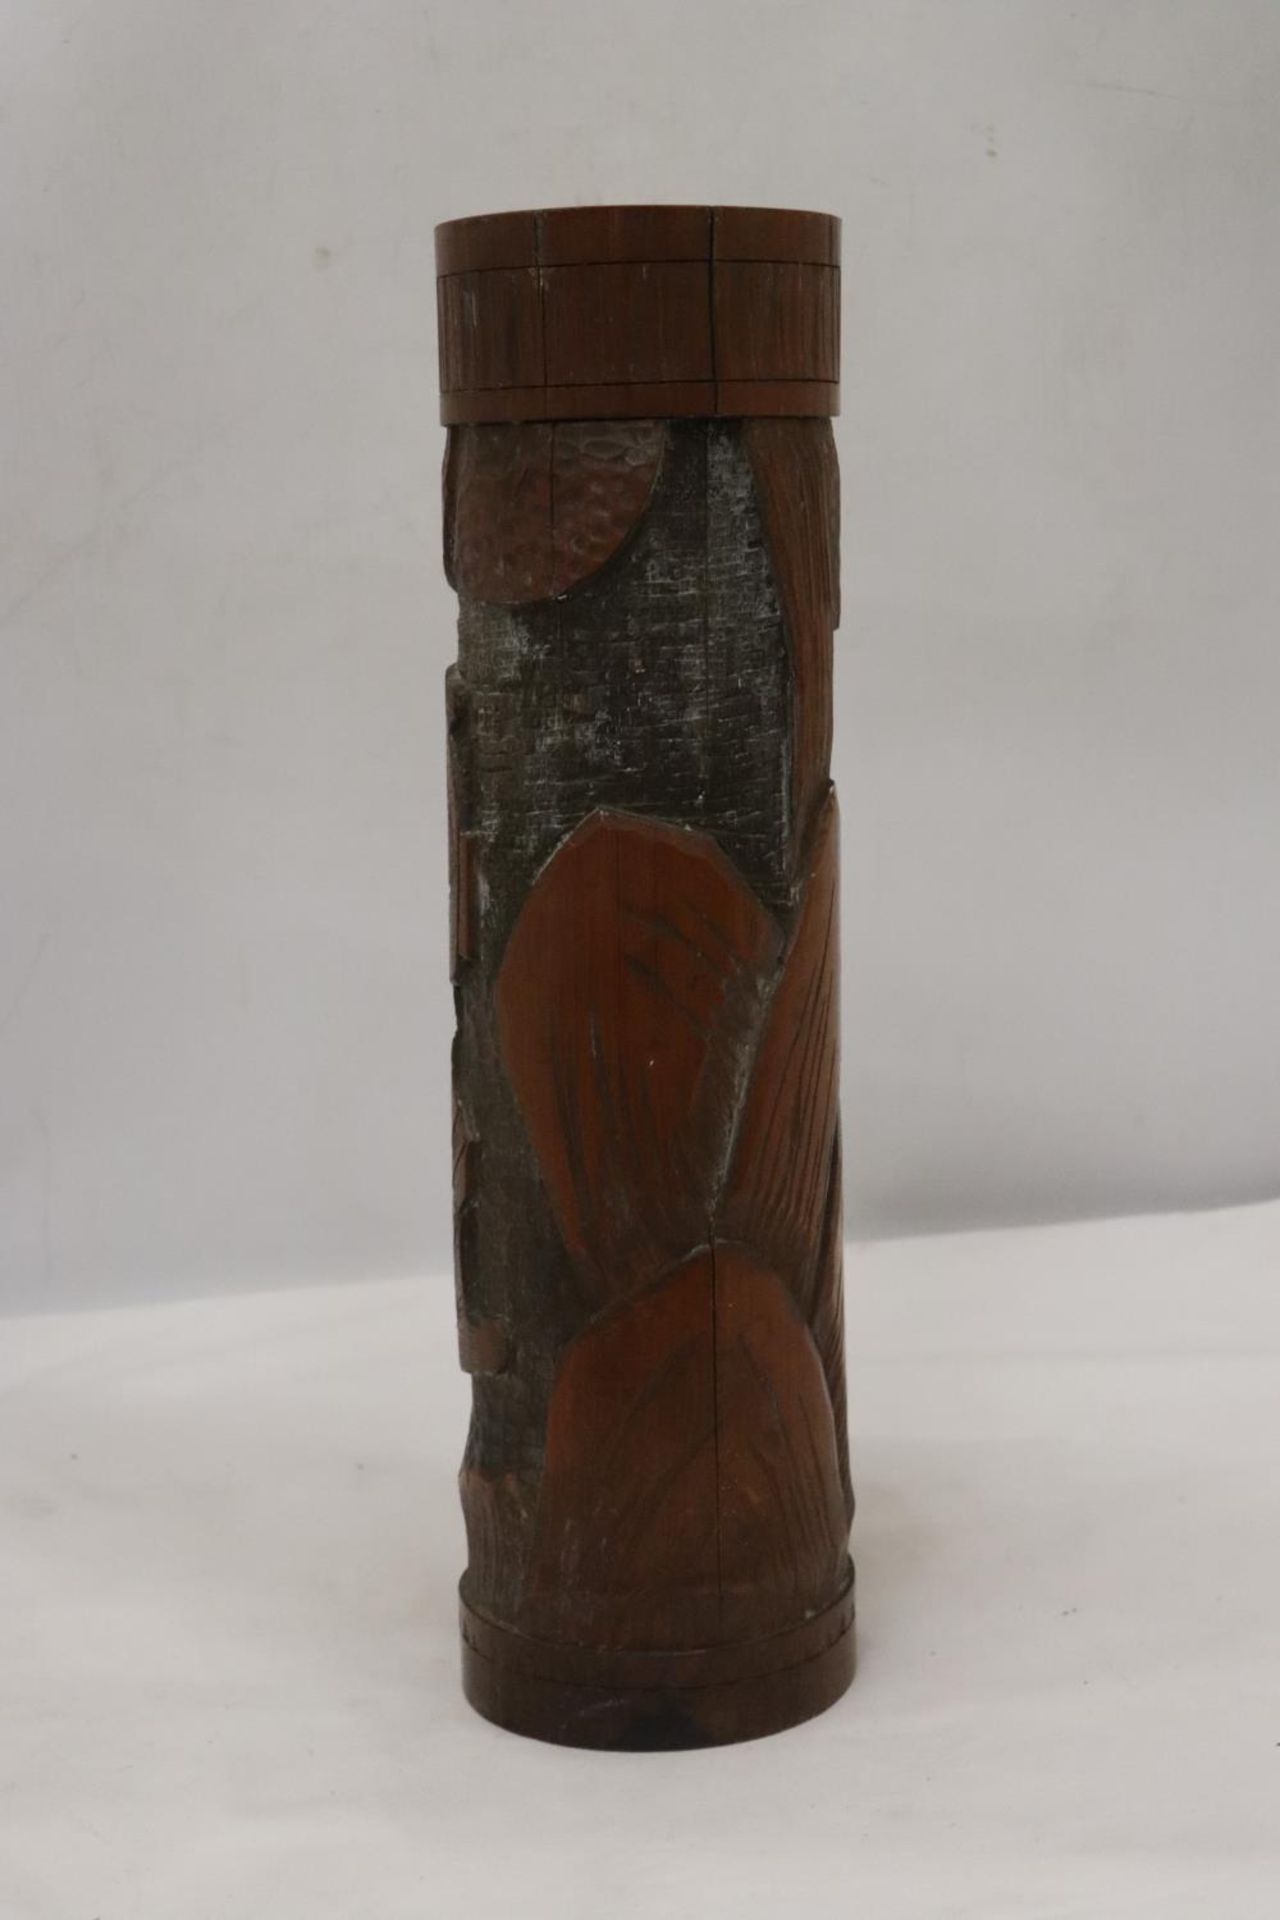 A BAMBOO BRUSH POT WITH SAMURAI DESIGN - Image 2 of 5